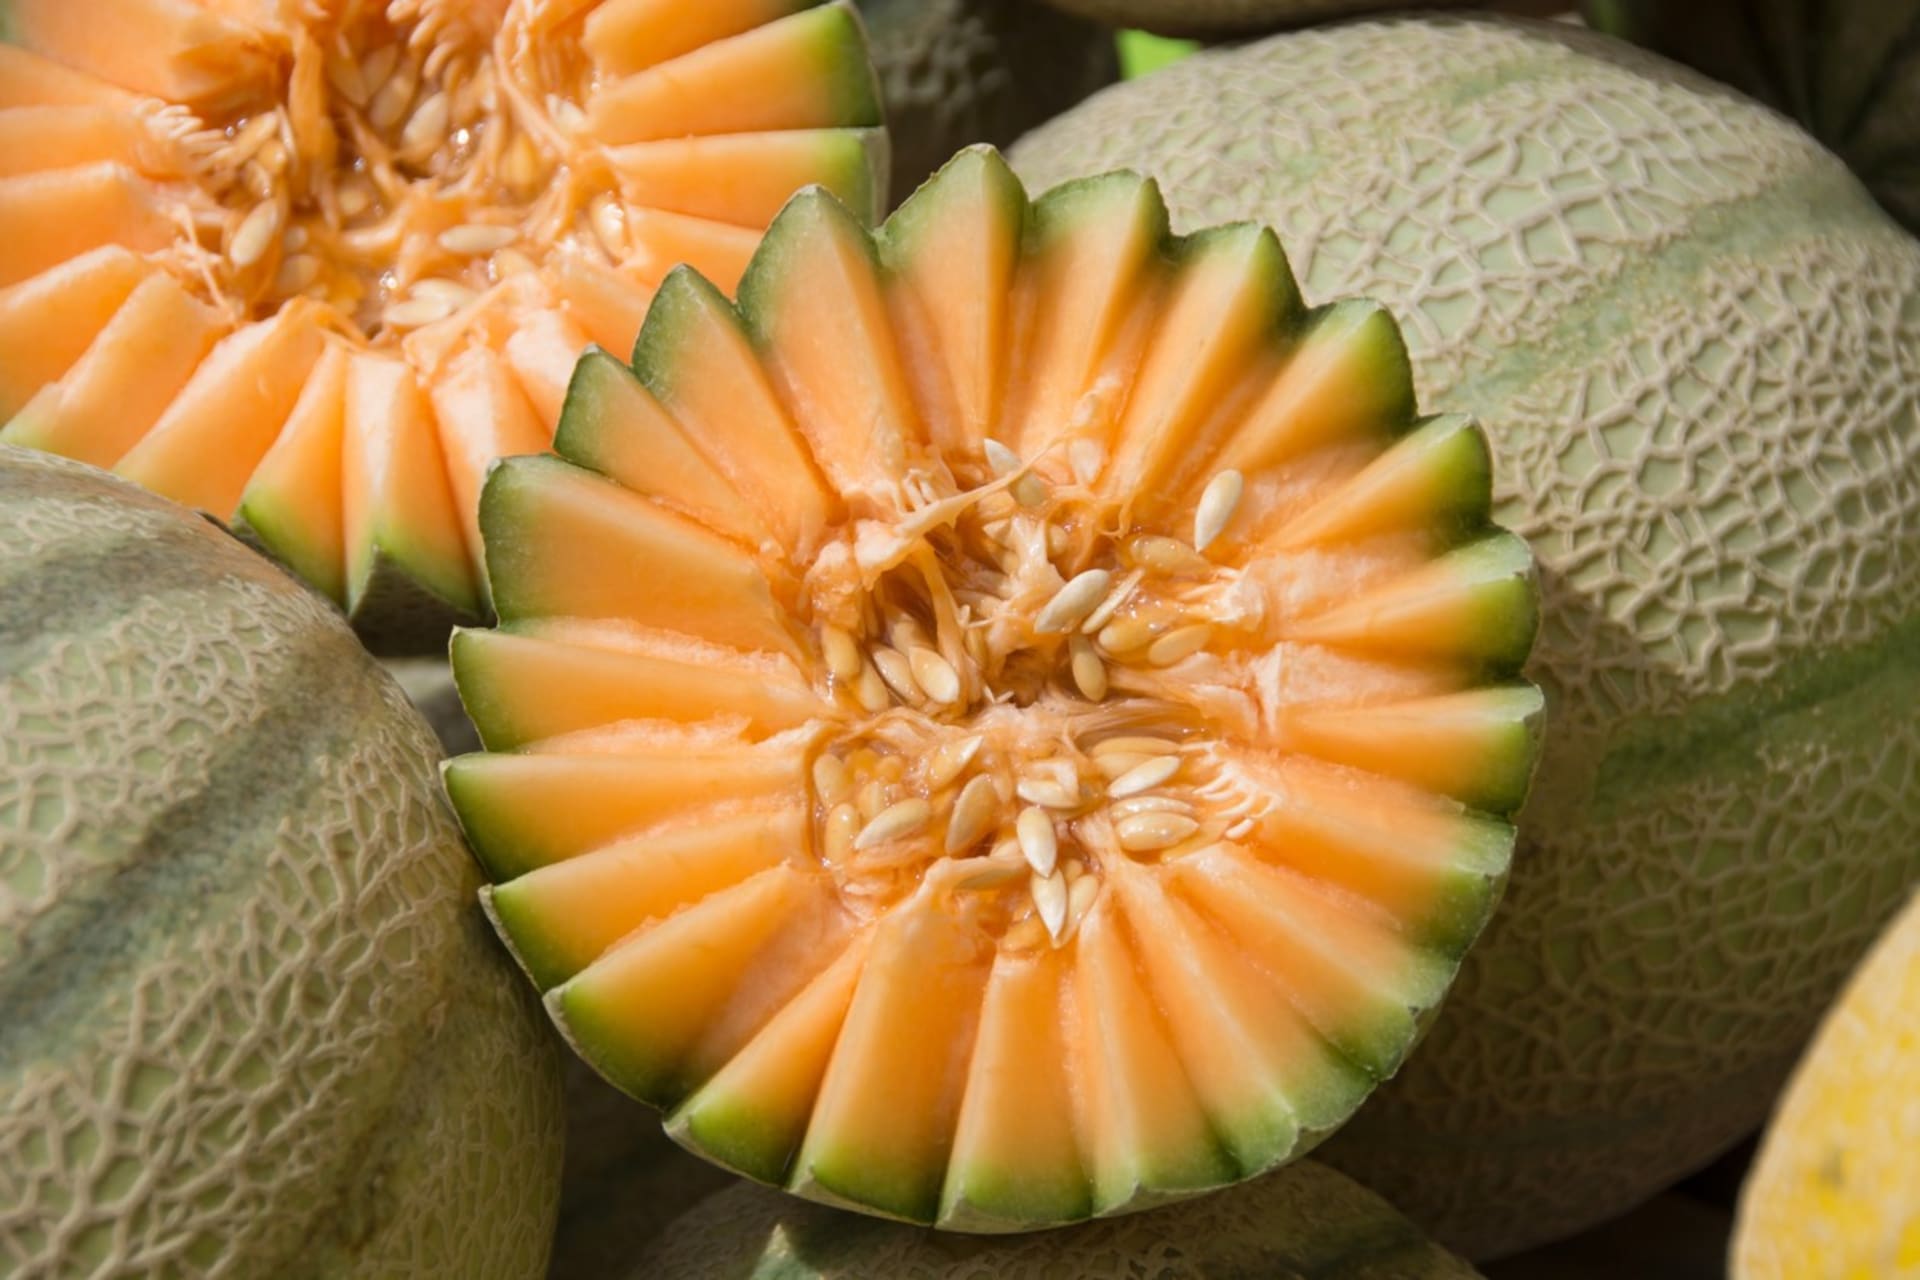 Cantaloupe (kantalup nebo taky muškátový meloun) je cukrový meloun  se sladkou oranžovou dužinou, vonící po ananasu a síťovanou  slupkou.